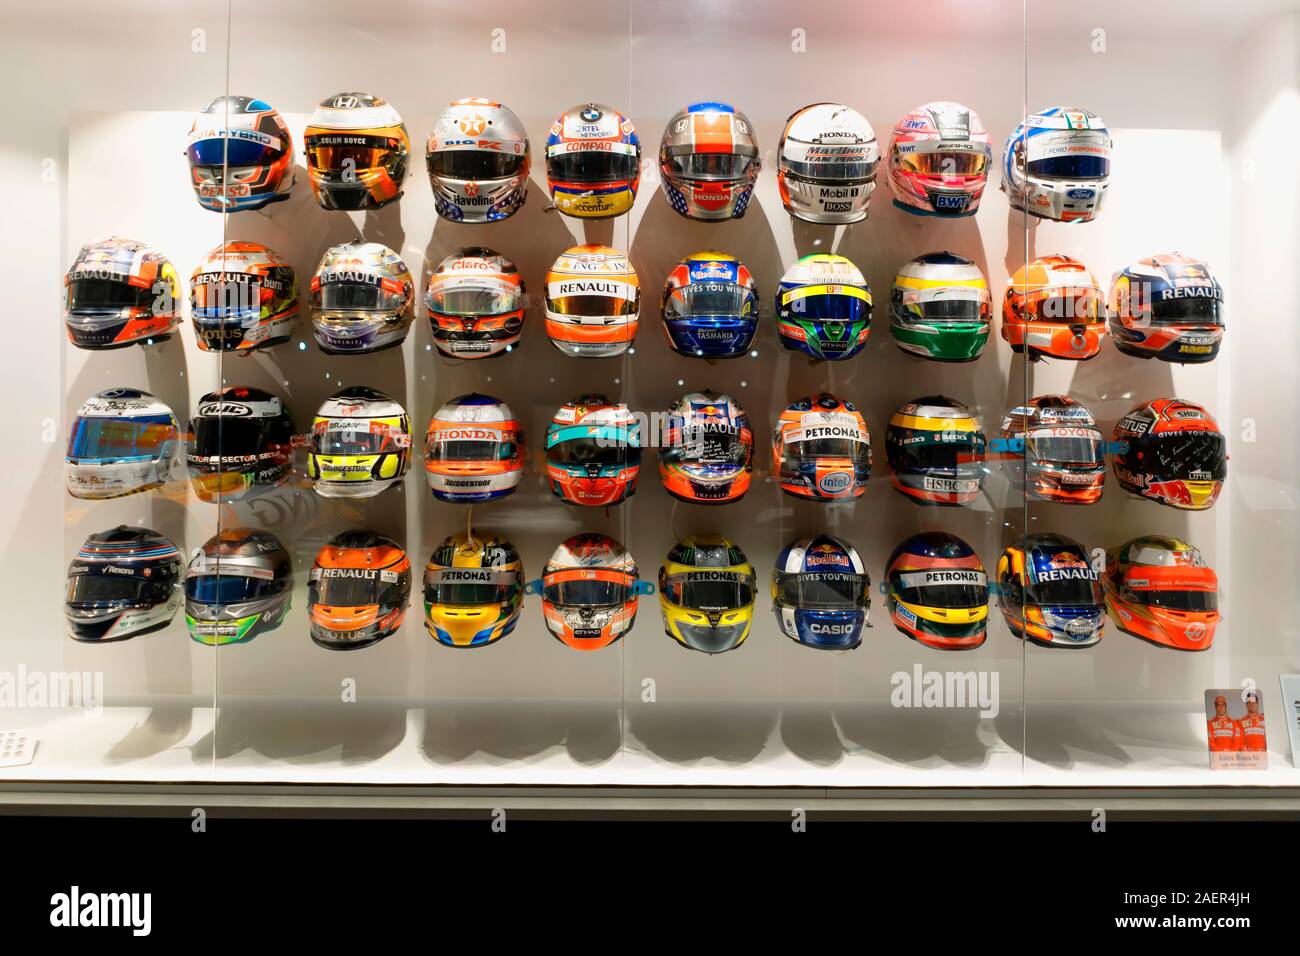 Cascos de F1 con la dedicación que otros pilotos dio a Fernando Alonso.  Imagen tomada en el Museo Fernando Alonso el 5 de diciembre de 2019.  Asturias, España Fotografía de stock - Alamy